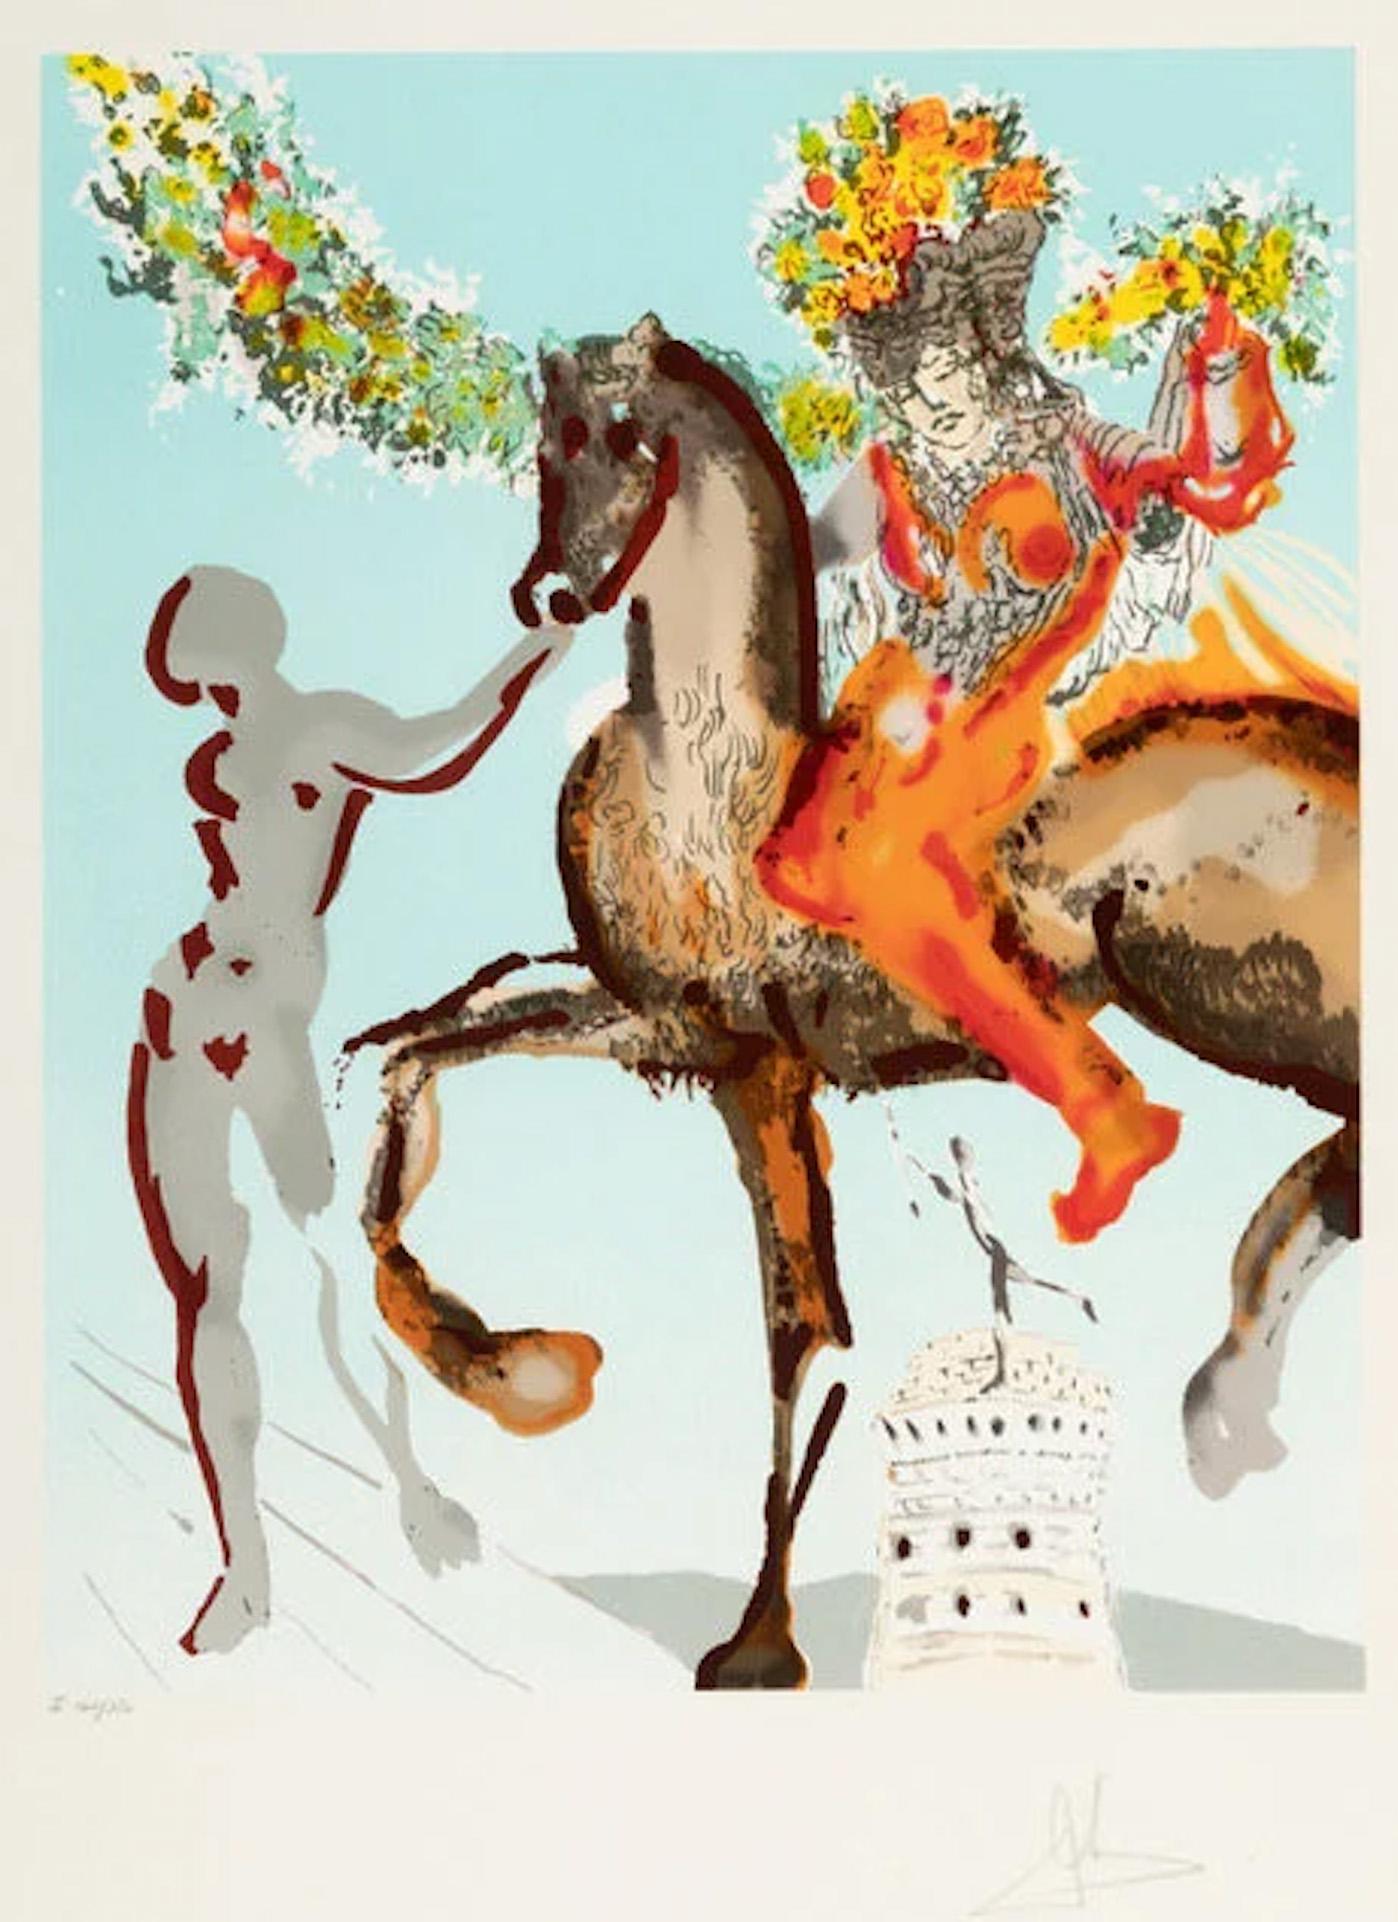 The Harbinger, aus New Jerusalem 1980 Lithographie Handsigniert von Salvador Dalí